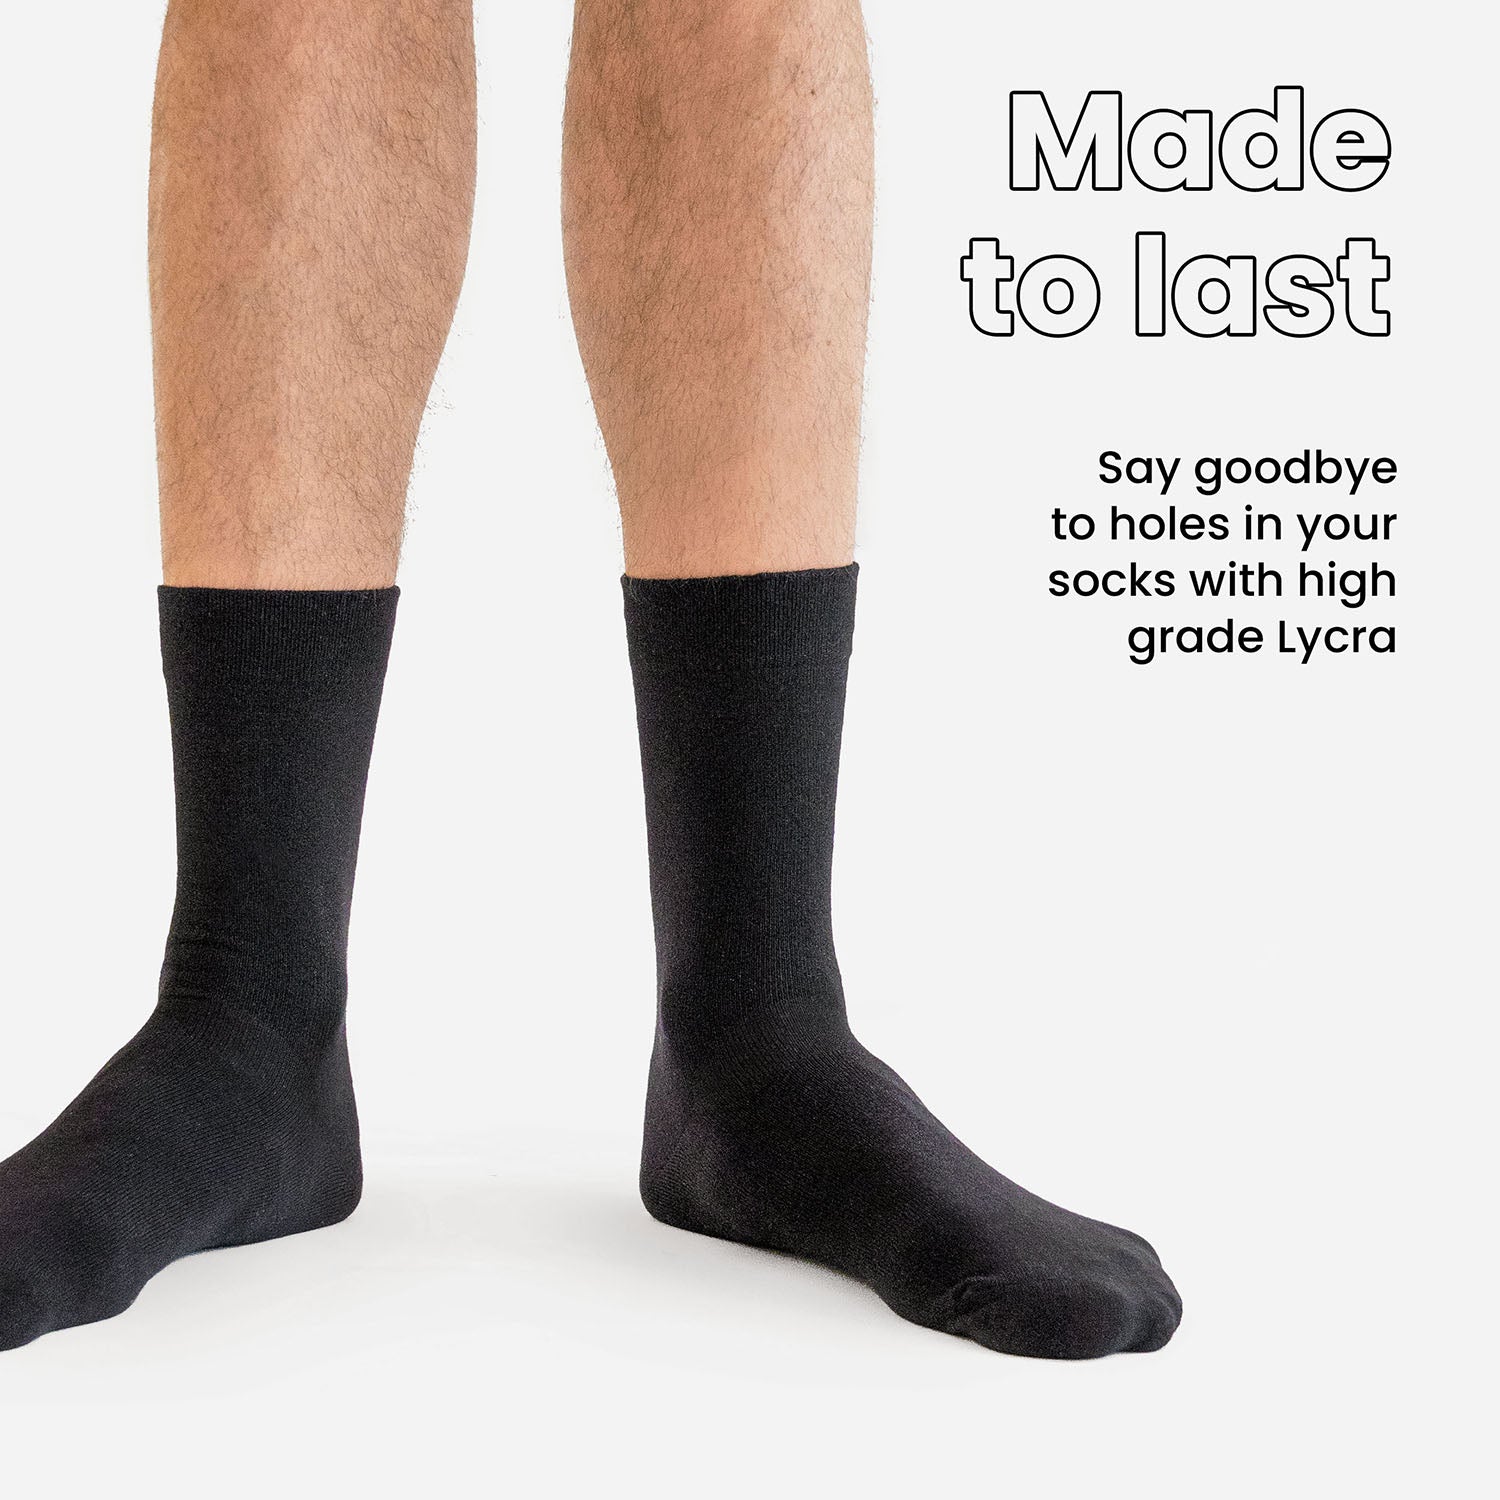 MicroModal Socks (color - Black)